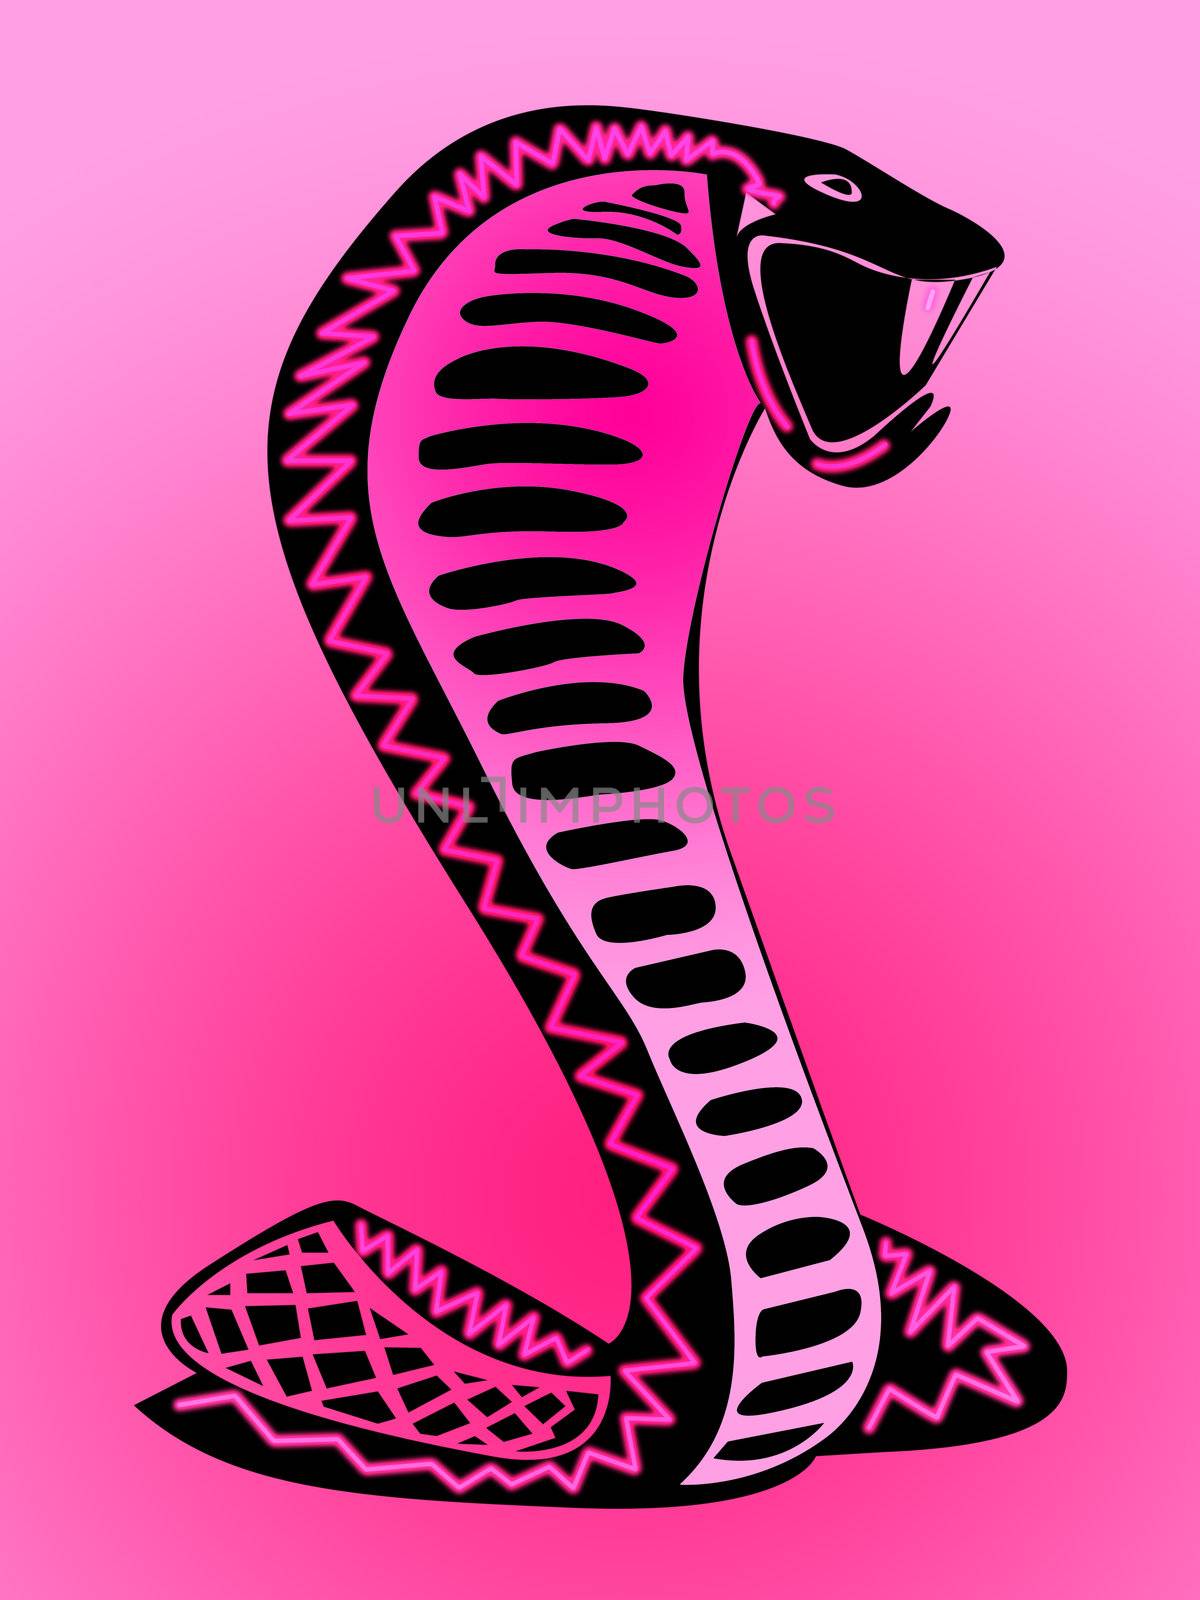 Psychedelic Pink Snake Illustration Design by bobbigmac